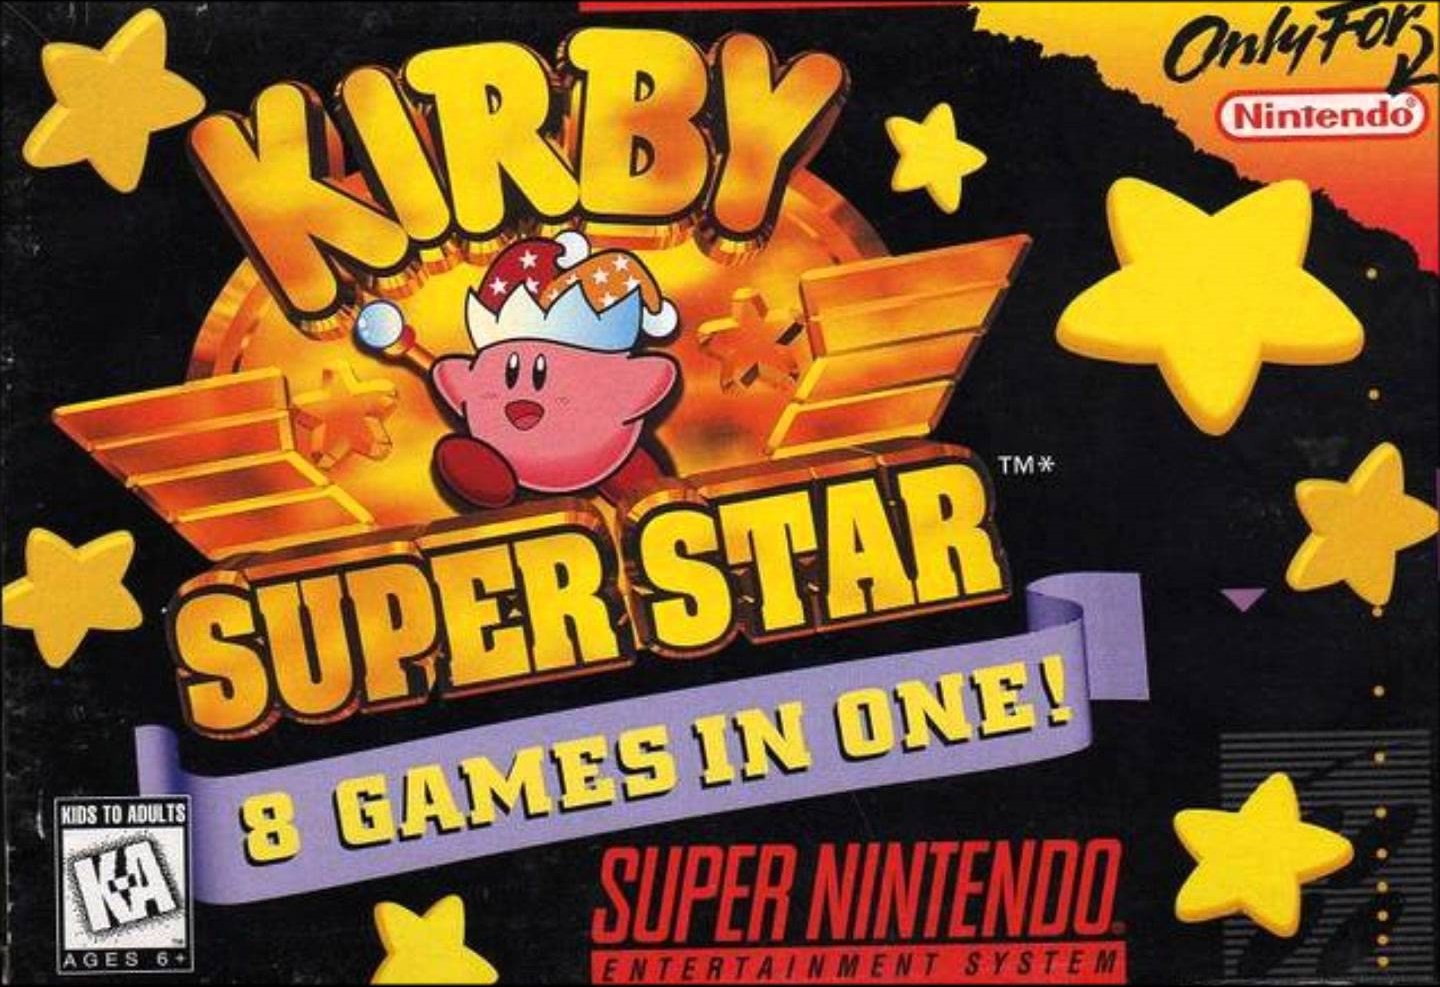 Kirby - Super Star